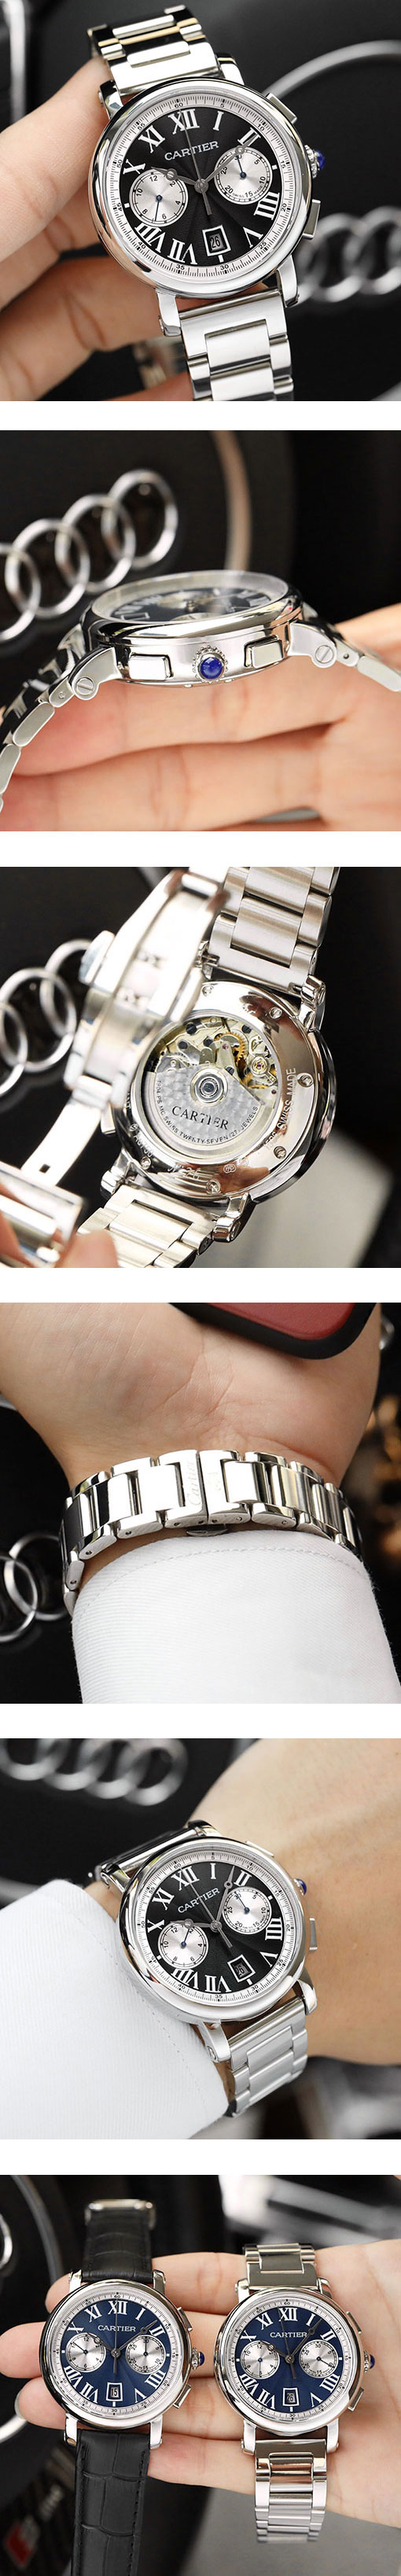 カルティエコピー時計 ロトンド ドゥ クロノグラフ ブラック WSRO0002-1